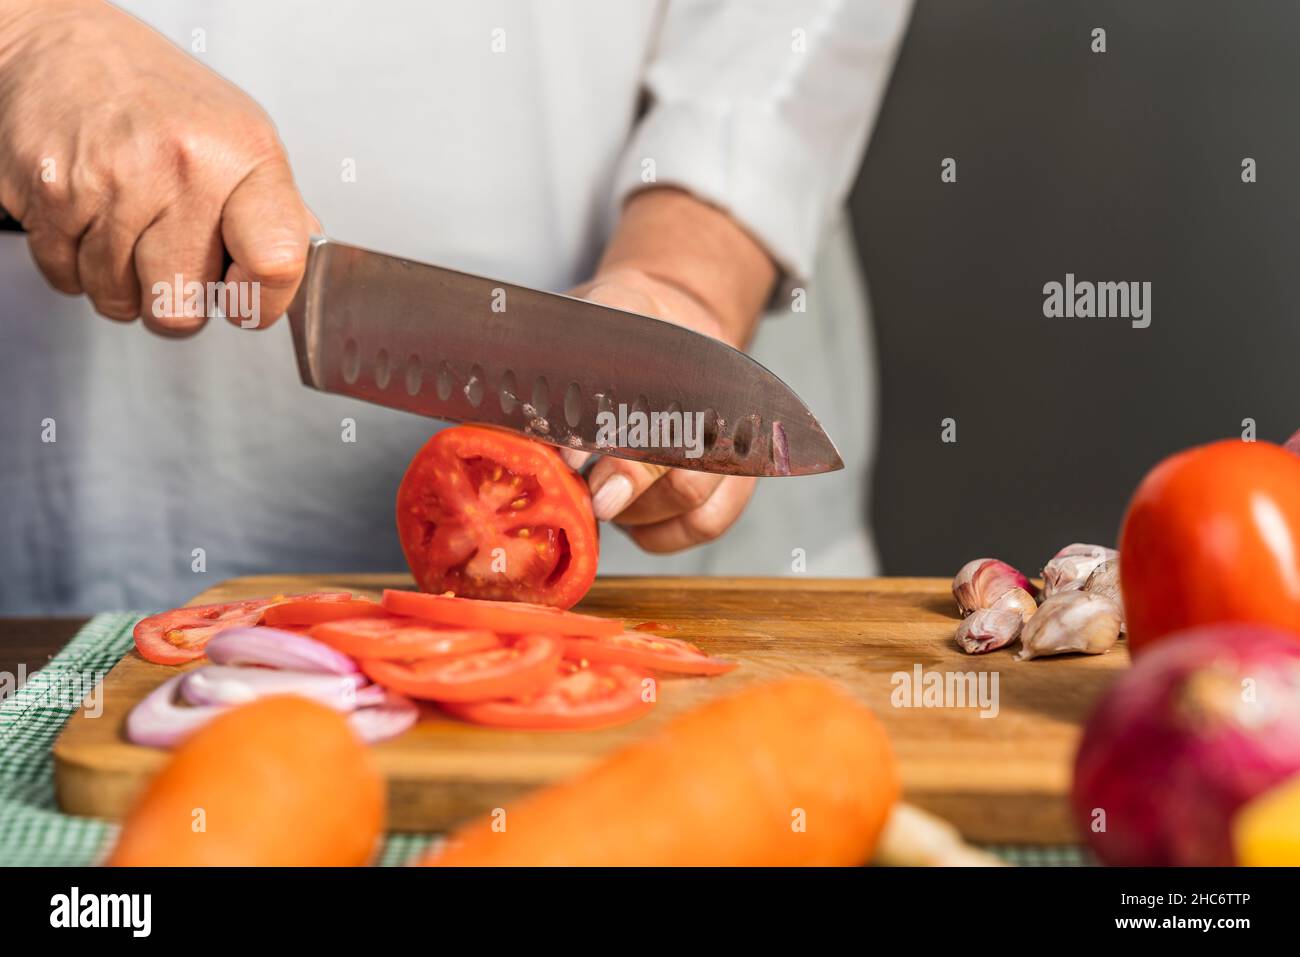 Vue rapprochée des mains d'une femme adulte coupant des tomates en tranches à l'aide d'un couteau de cuisine sur une planche à découper en bois pour la préparation de lasagnes. Banque D'Images